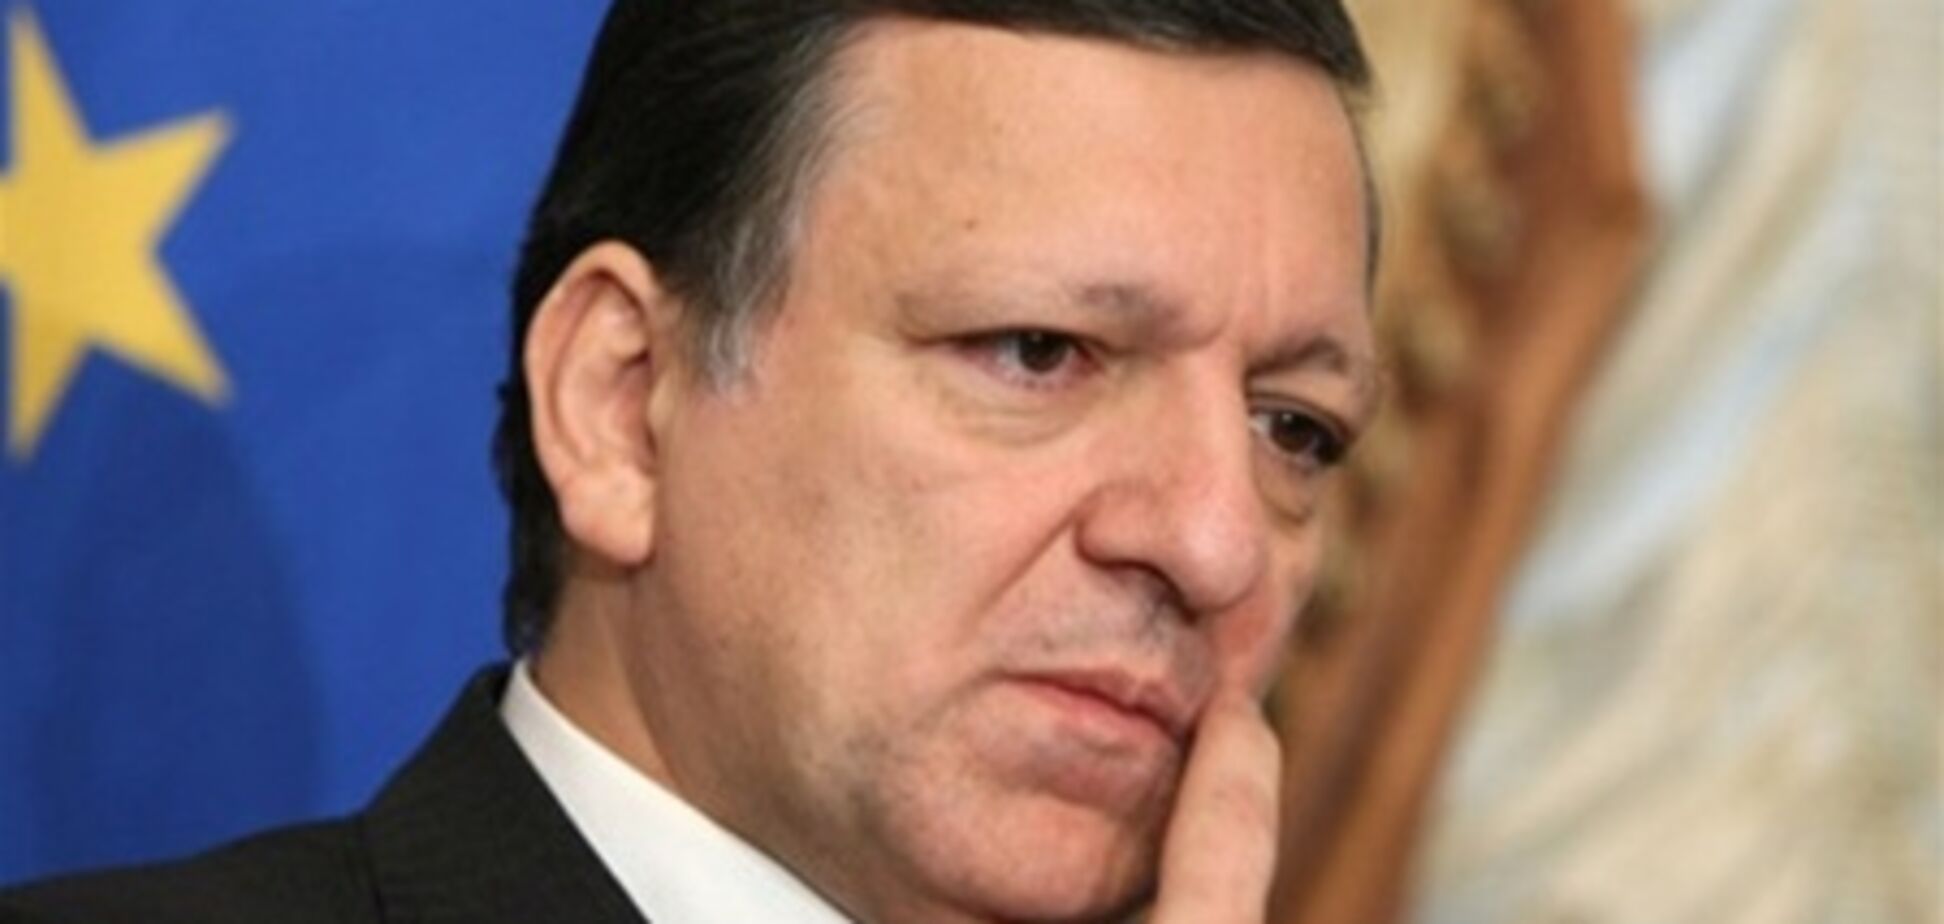 Баррозу: очень позитивный саммит